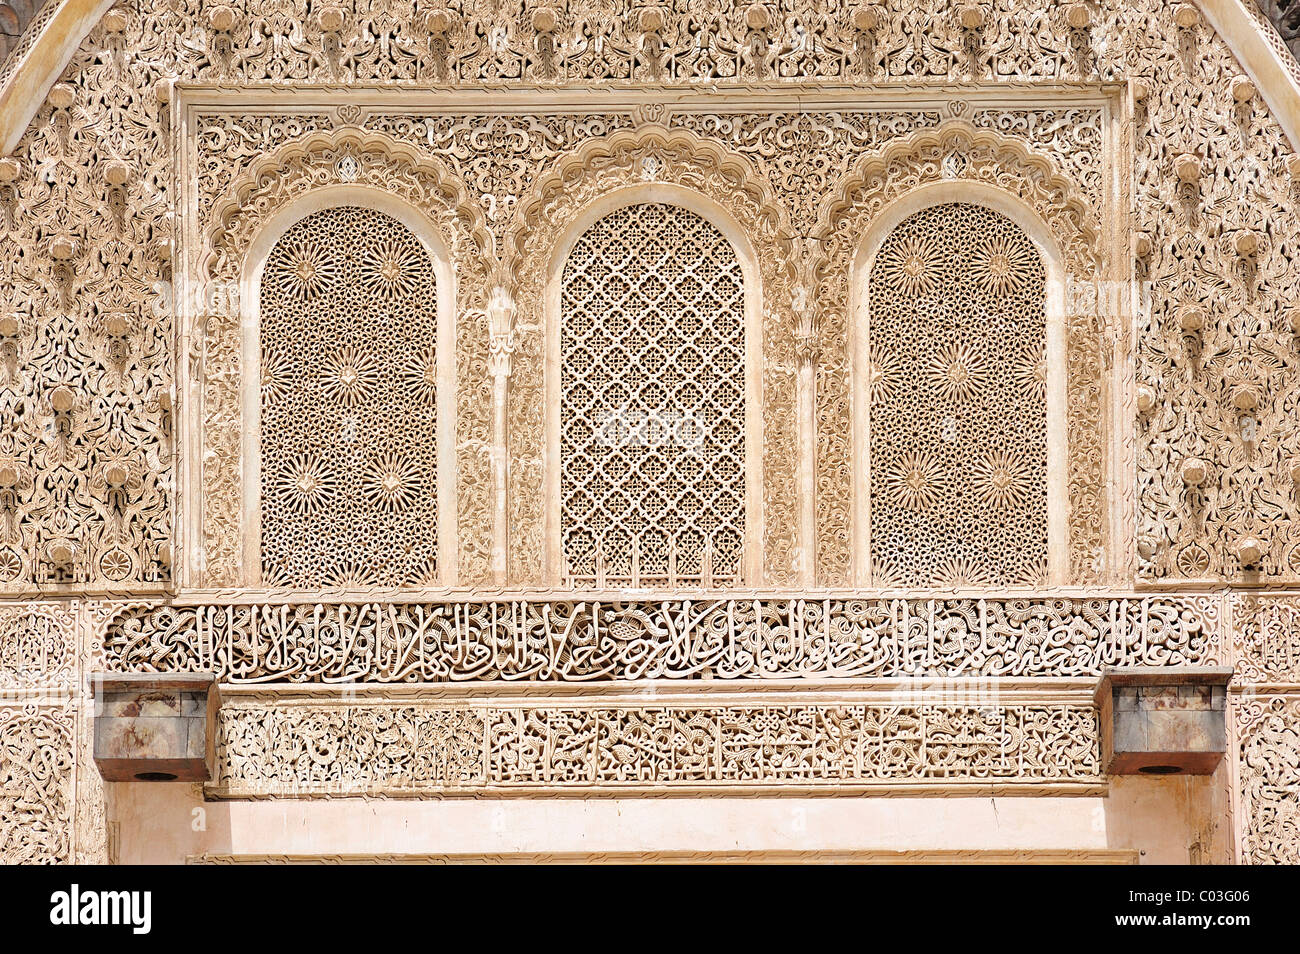 Aufwendige Stuckverzierungen, Arabesken und koranischen Verse gemacht aus Gips in der Medersa Bou Inania Koranschule, Fes, Marokko Stockfoto